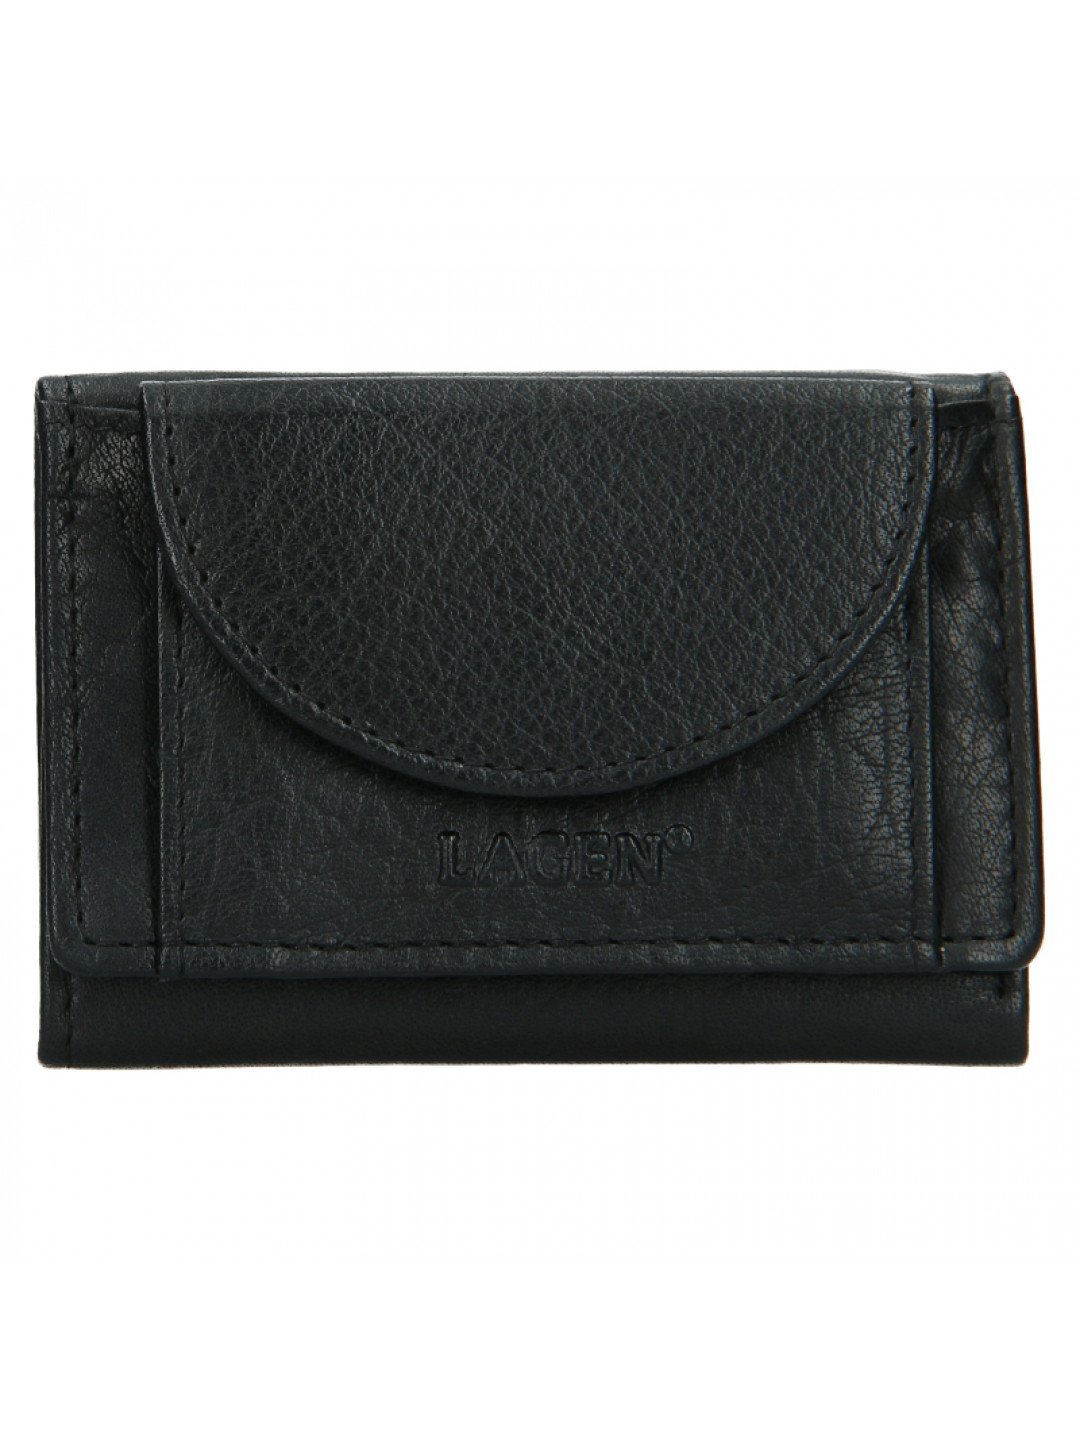 Dámská kožená peněženka W 22030 malá peněženka černá